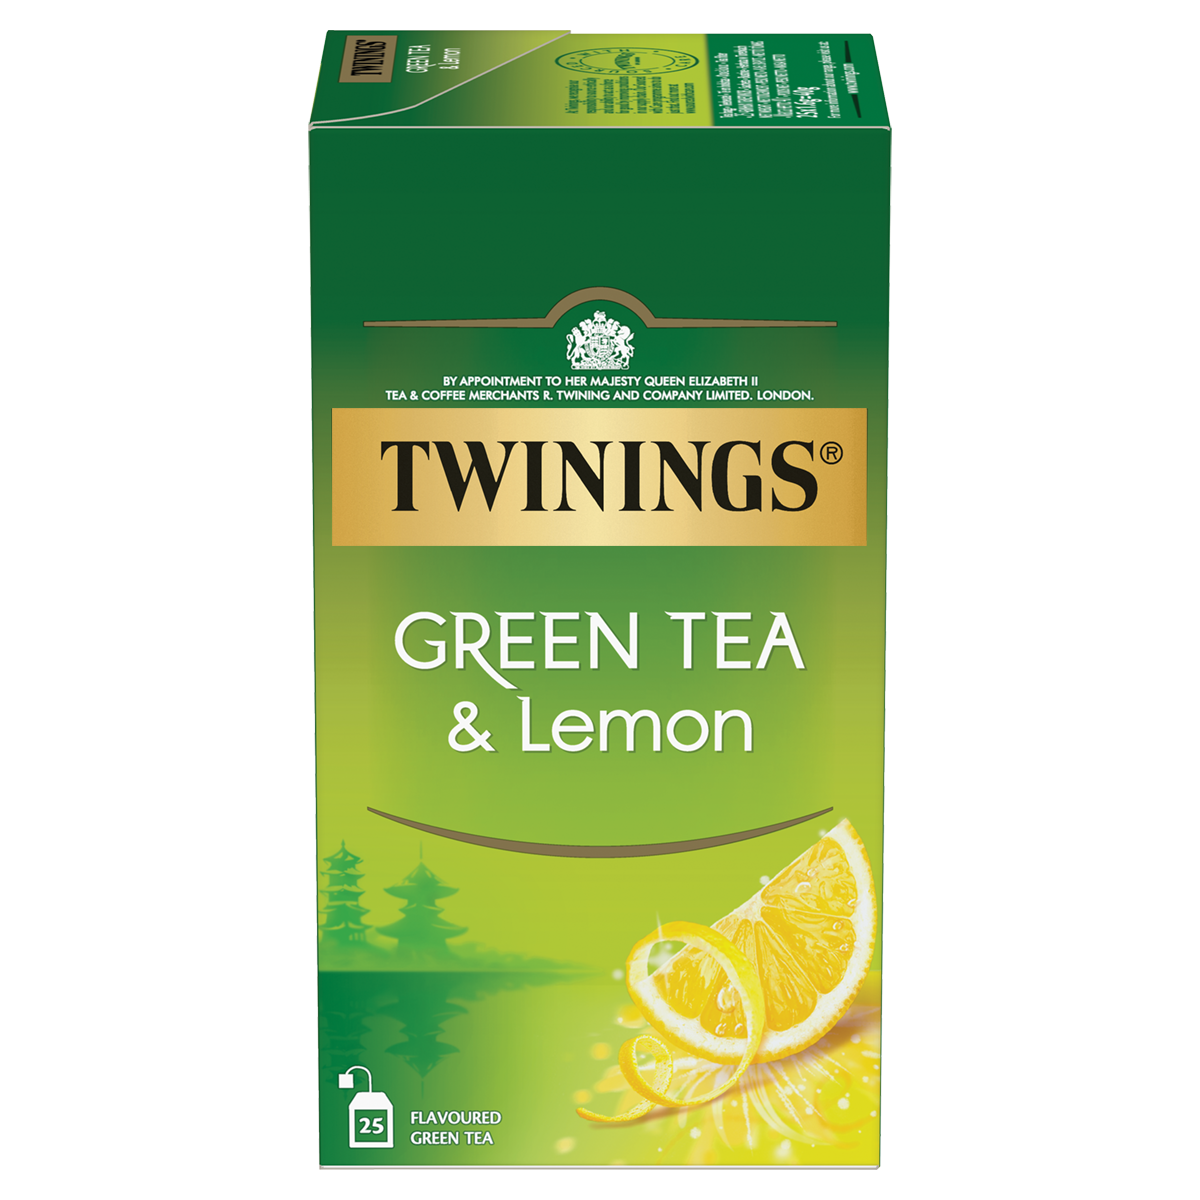  Green Tea & Lemon: le thé vert unique